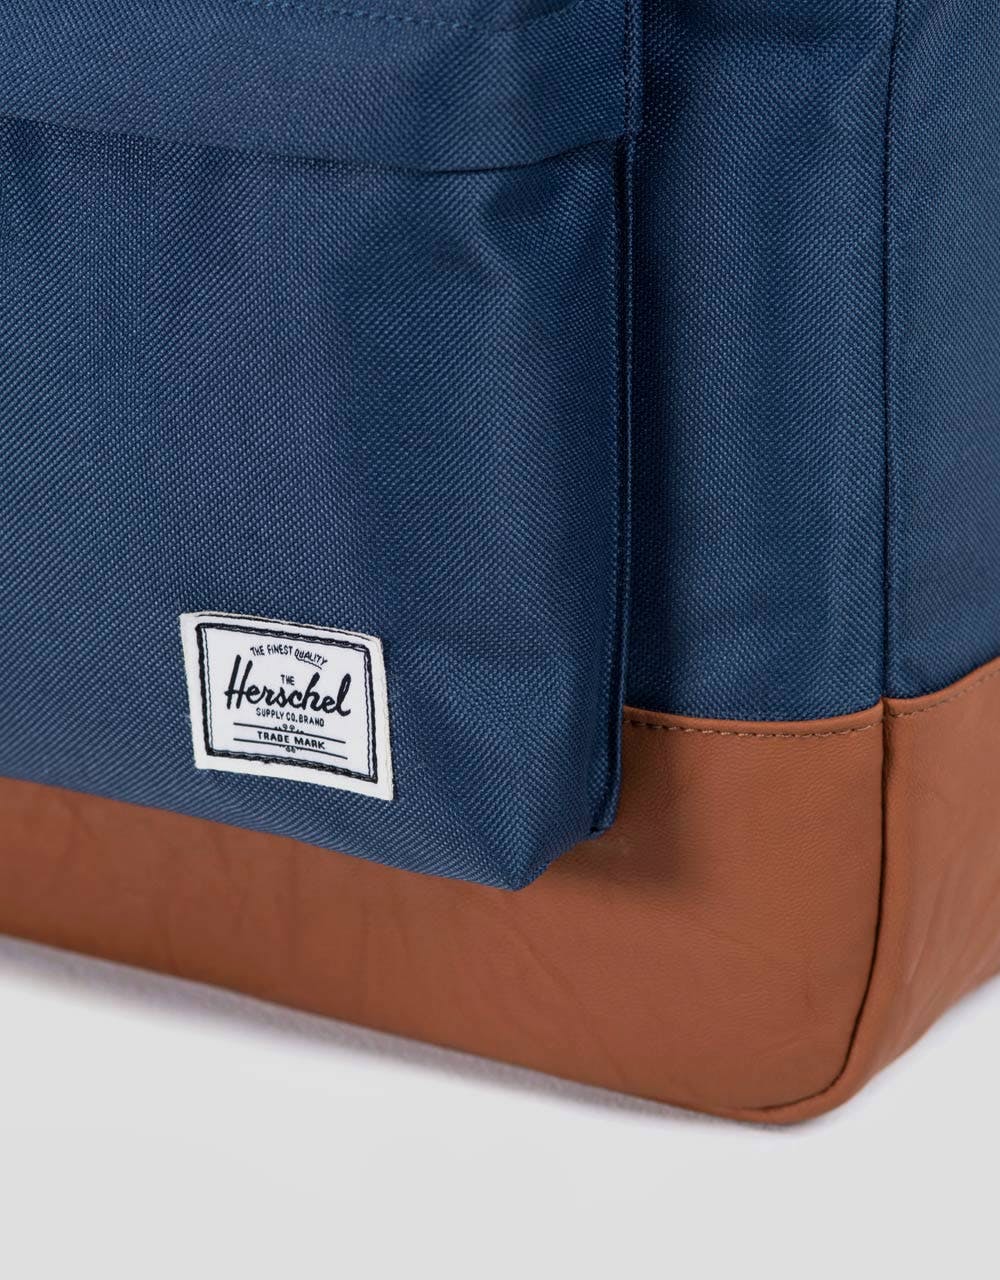 Herschel Supply Co. Heritage Backpack - Navy/Tan